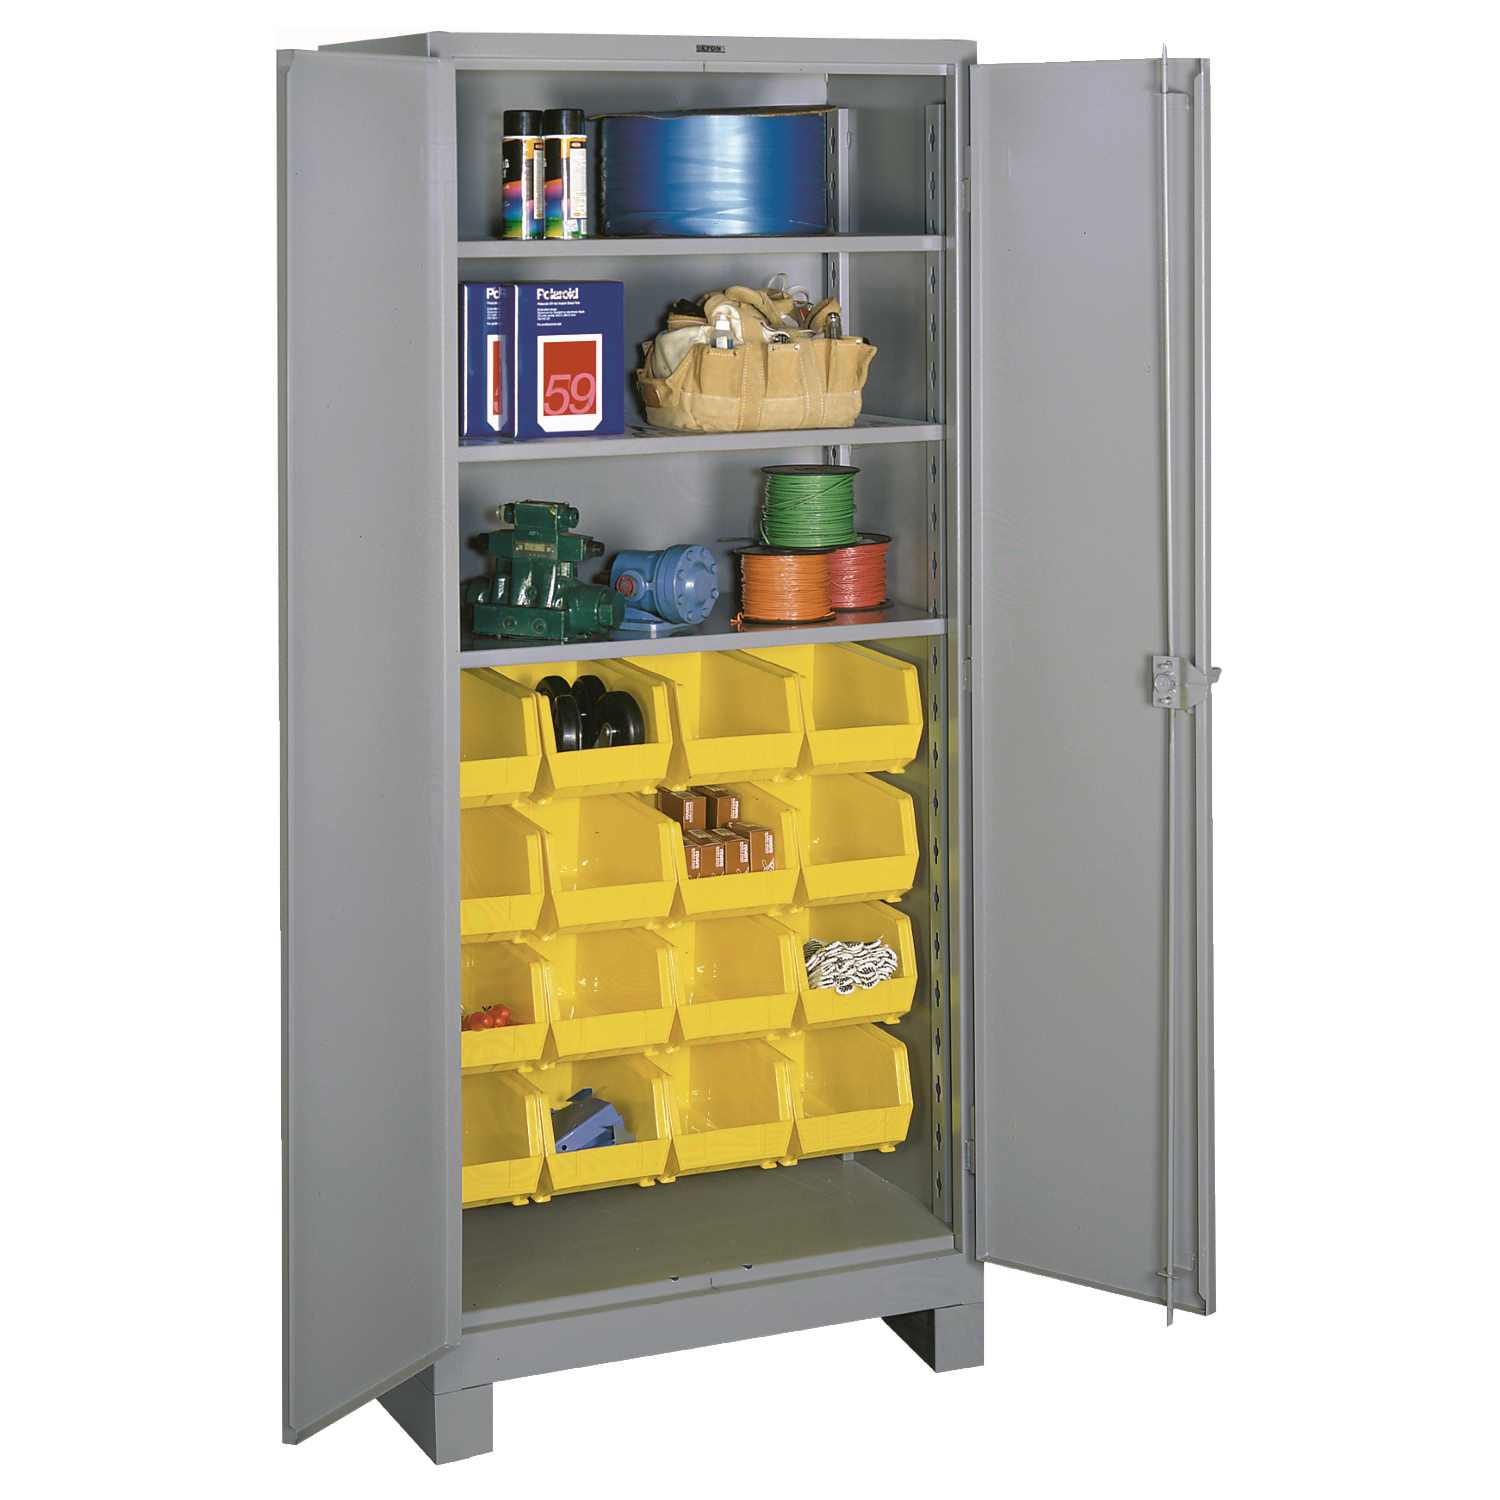 https://www.lyonworkspace.com/wp-content/uploads/lyon-all-welded-shelf-bin-cabinet-1123-dove-gray-with-props.jpg